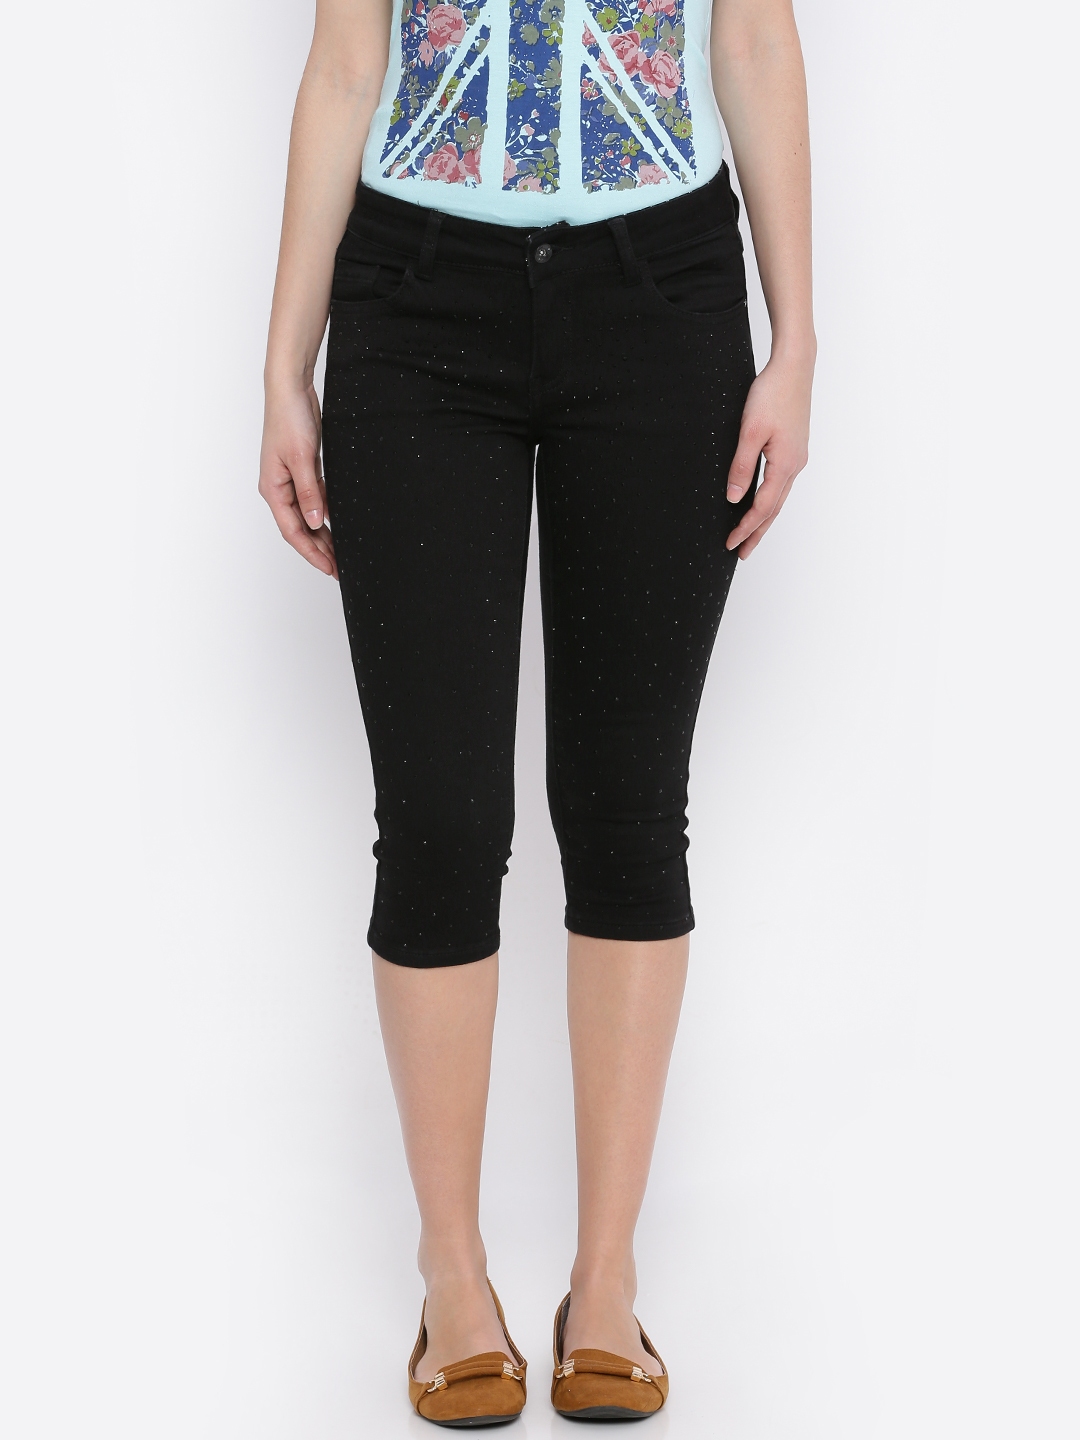 Buy Deal Jeans Black Denim Skinny Fit Capris With Embellished Detail ...